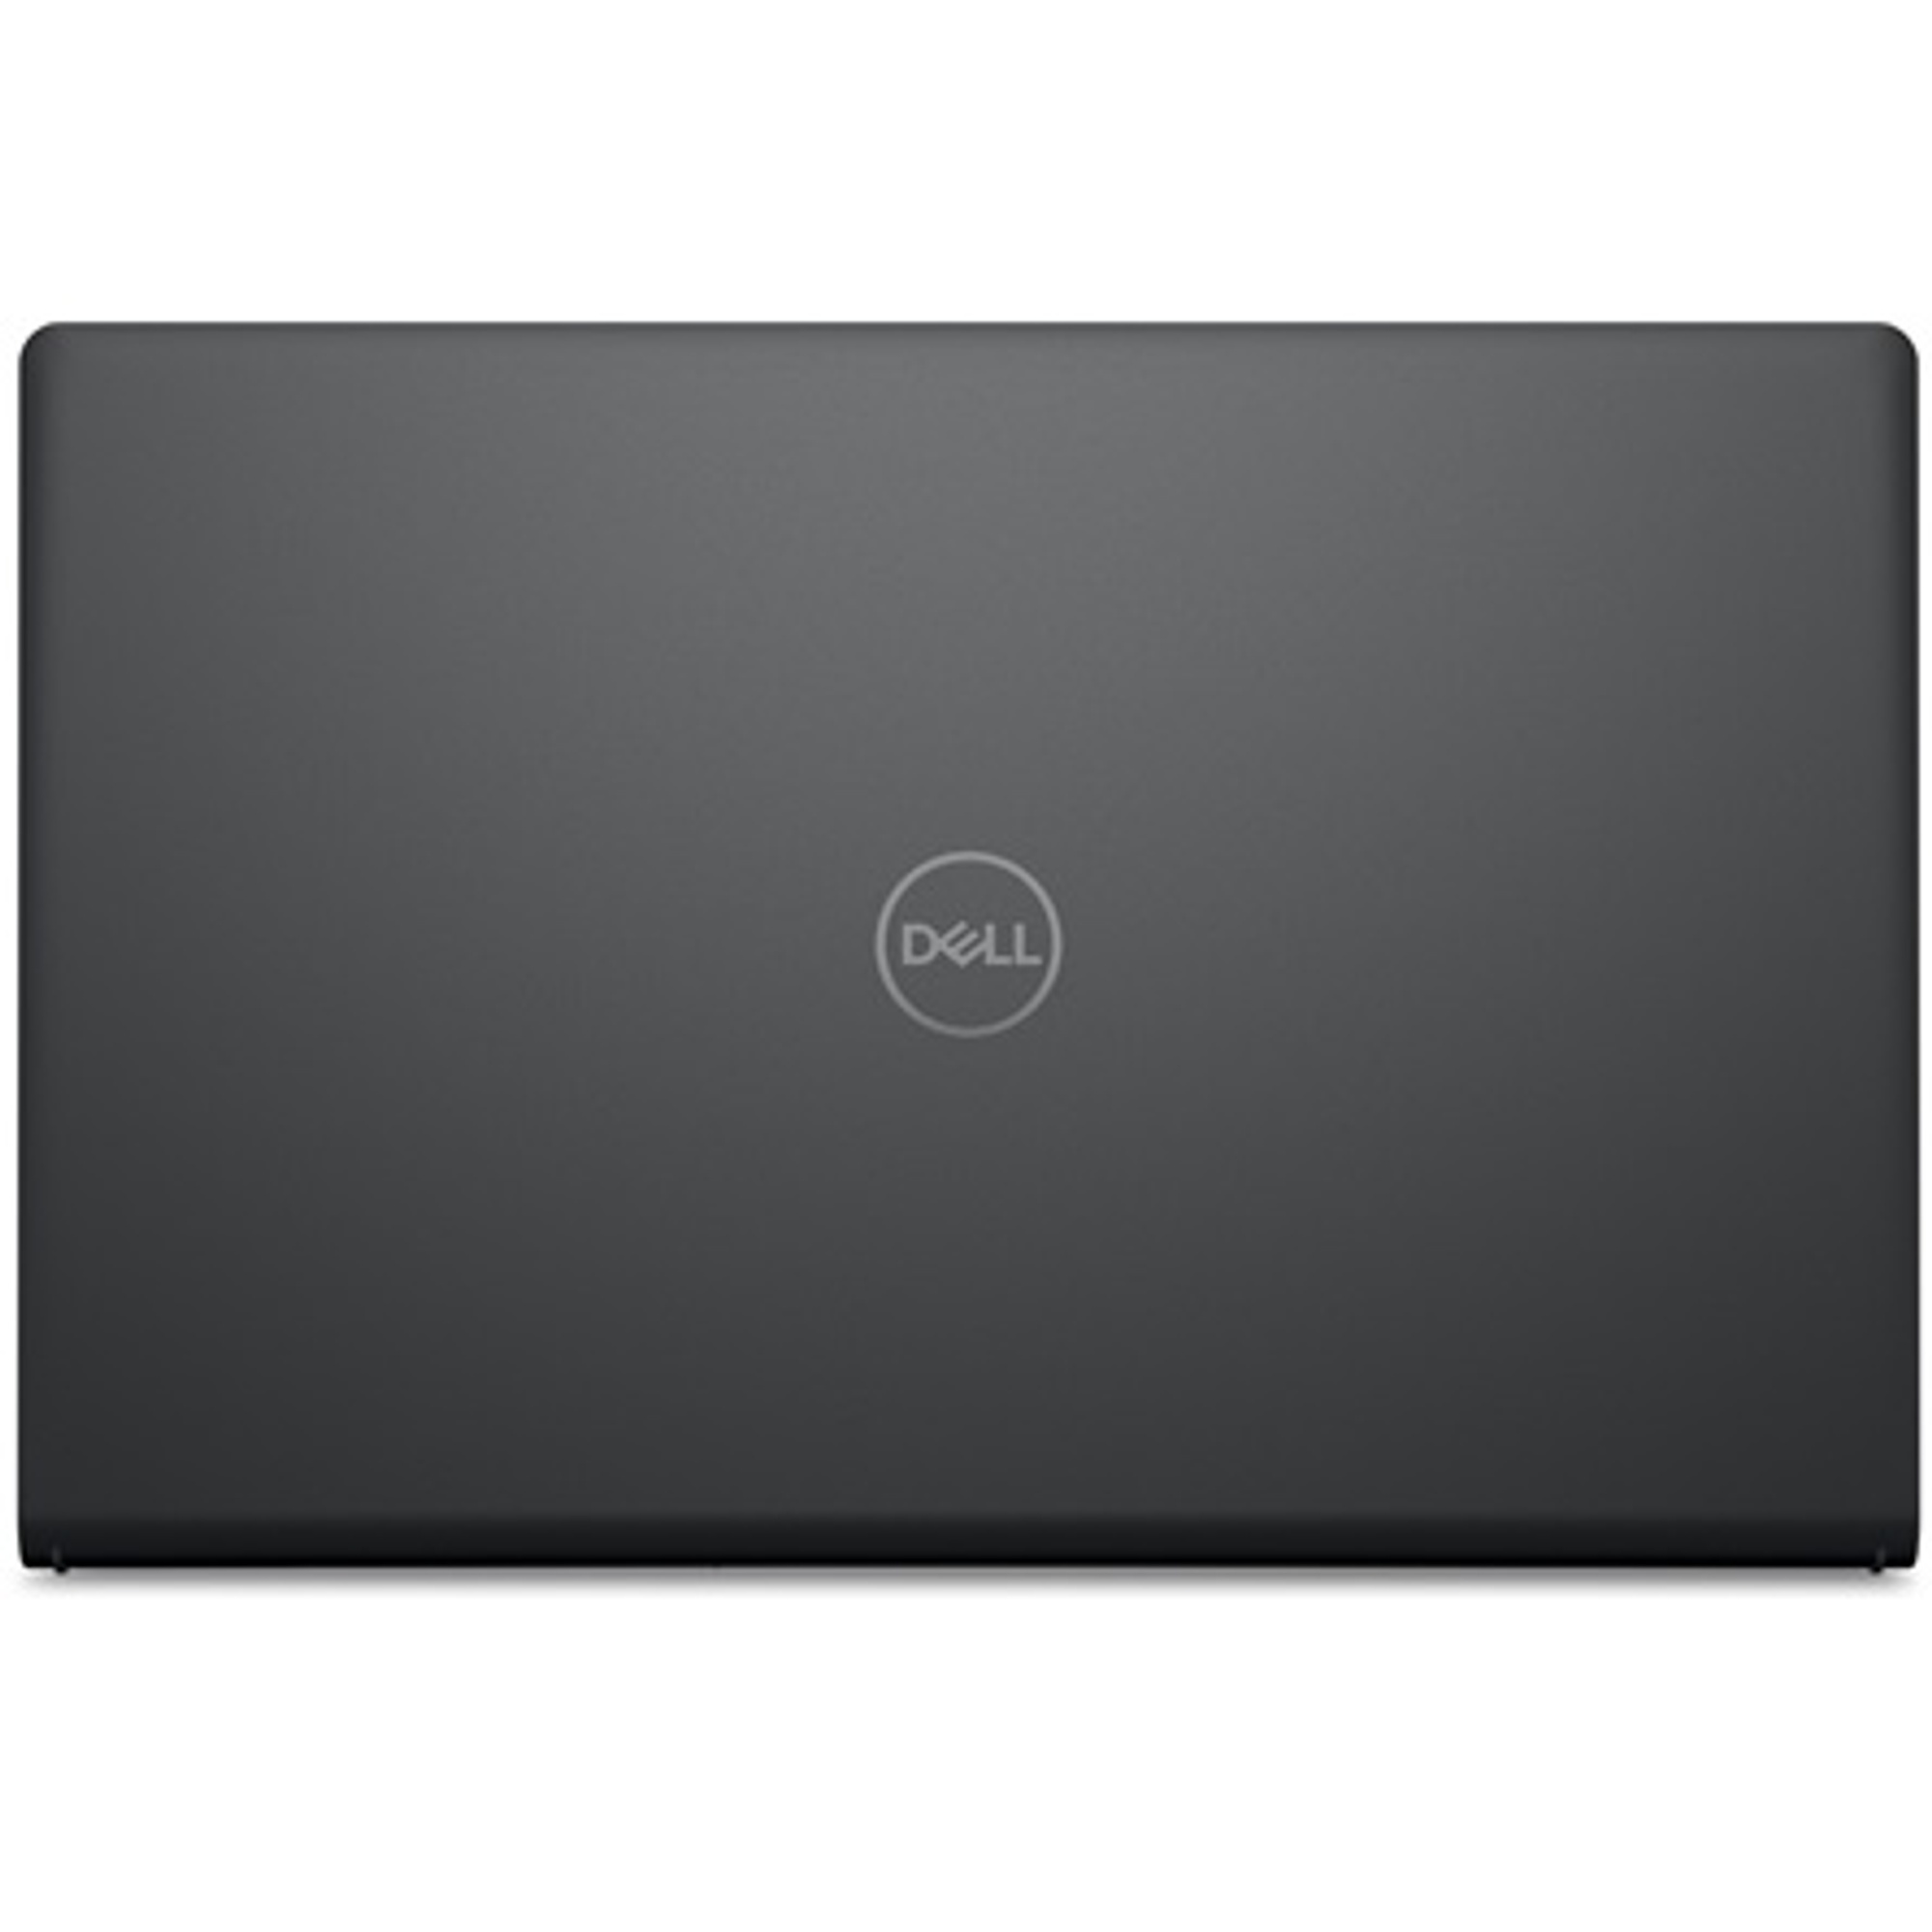 DELL V3520-20 Laptop / Notebook 5